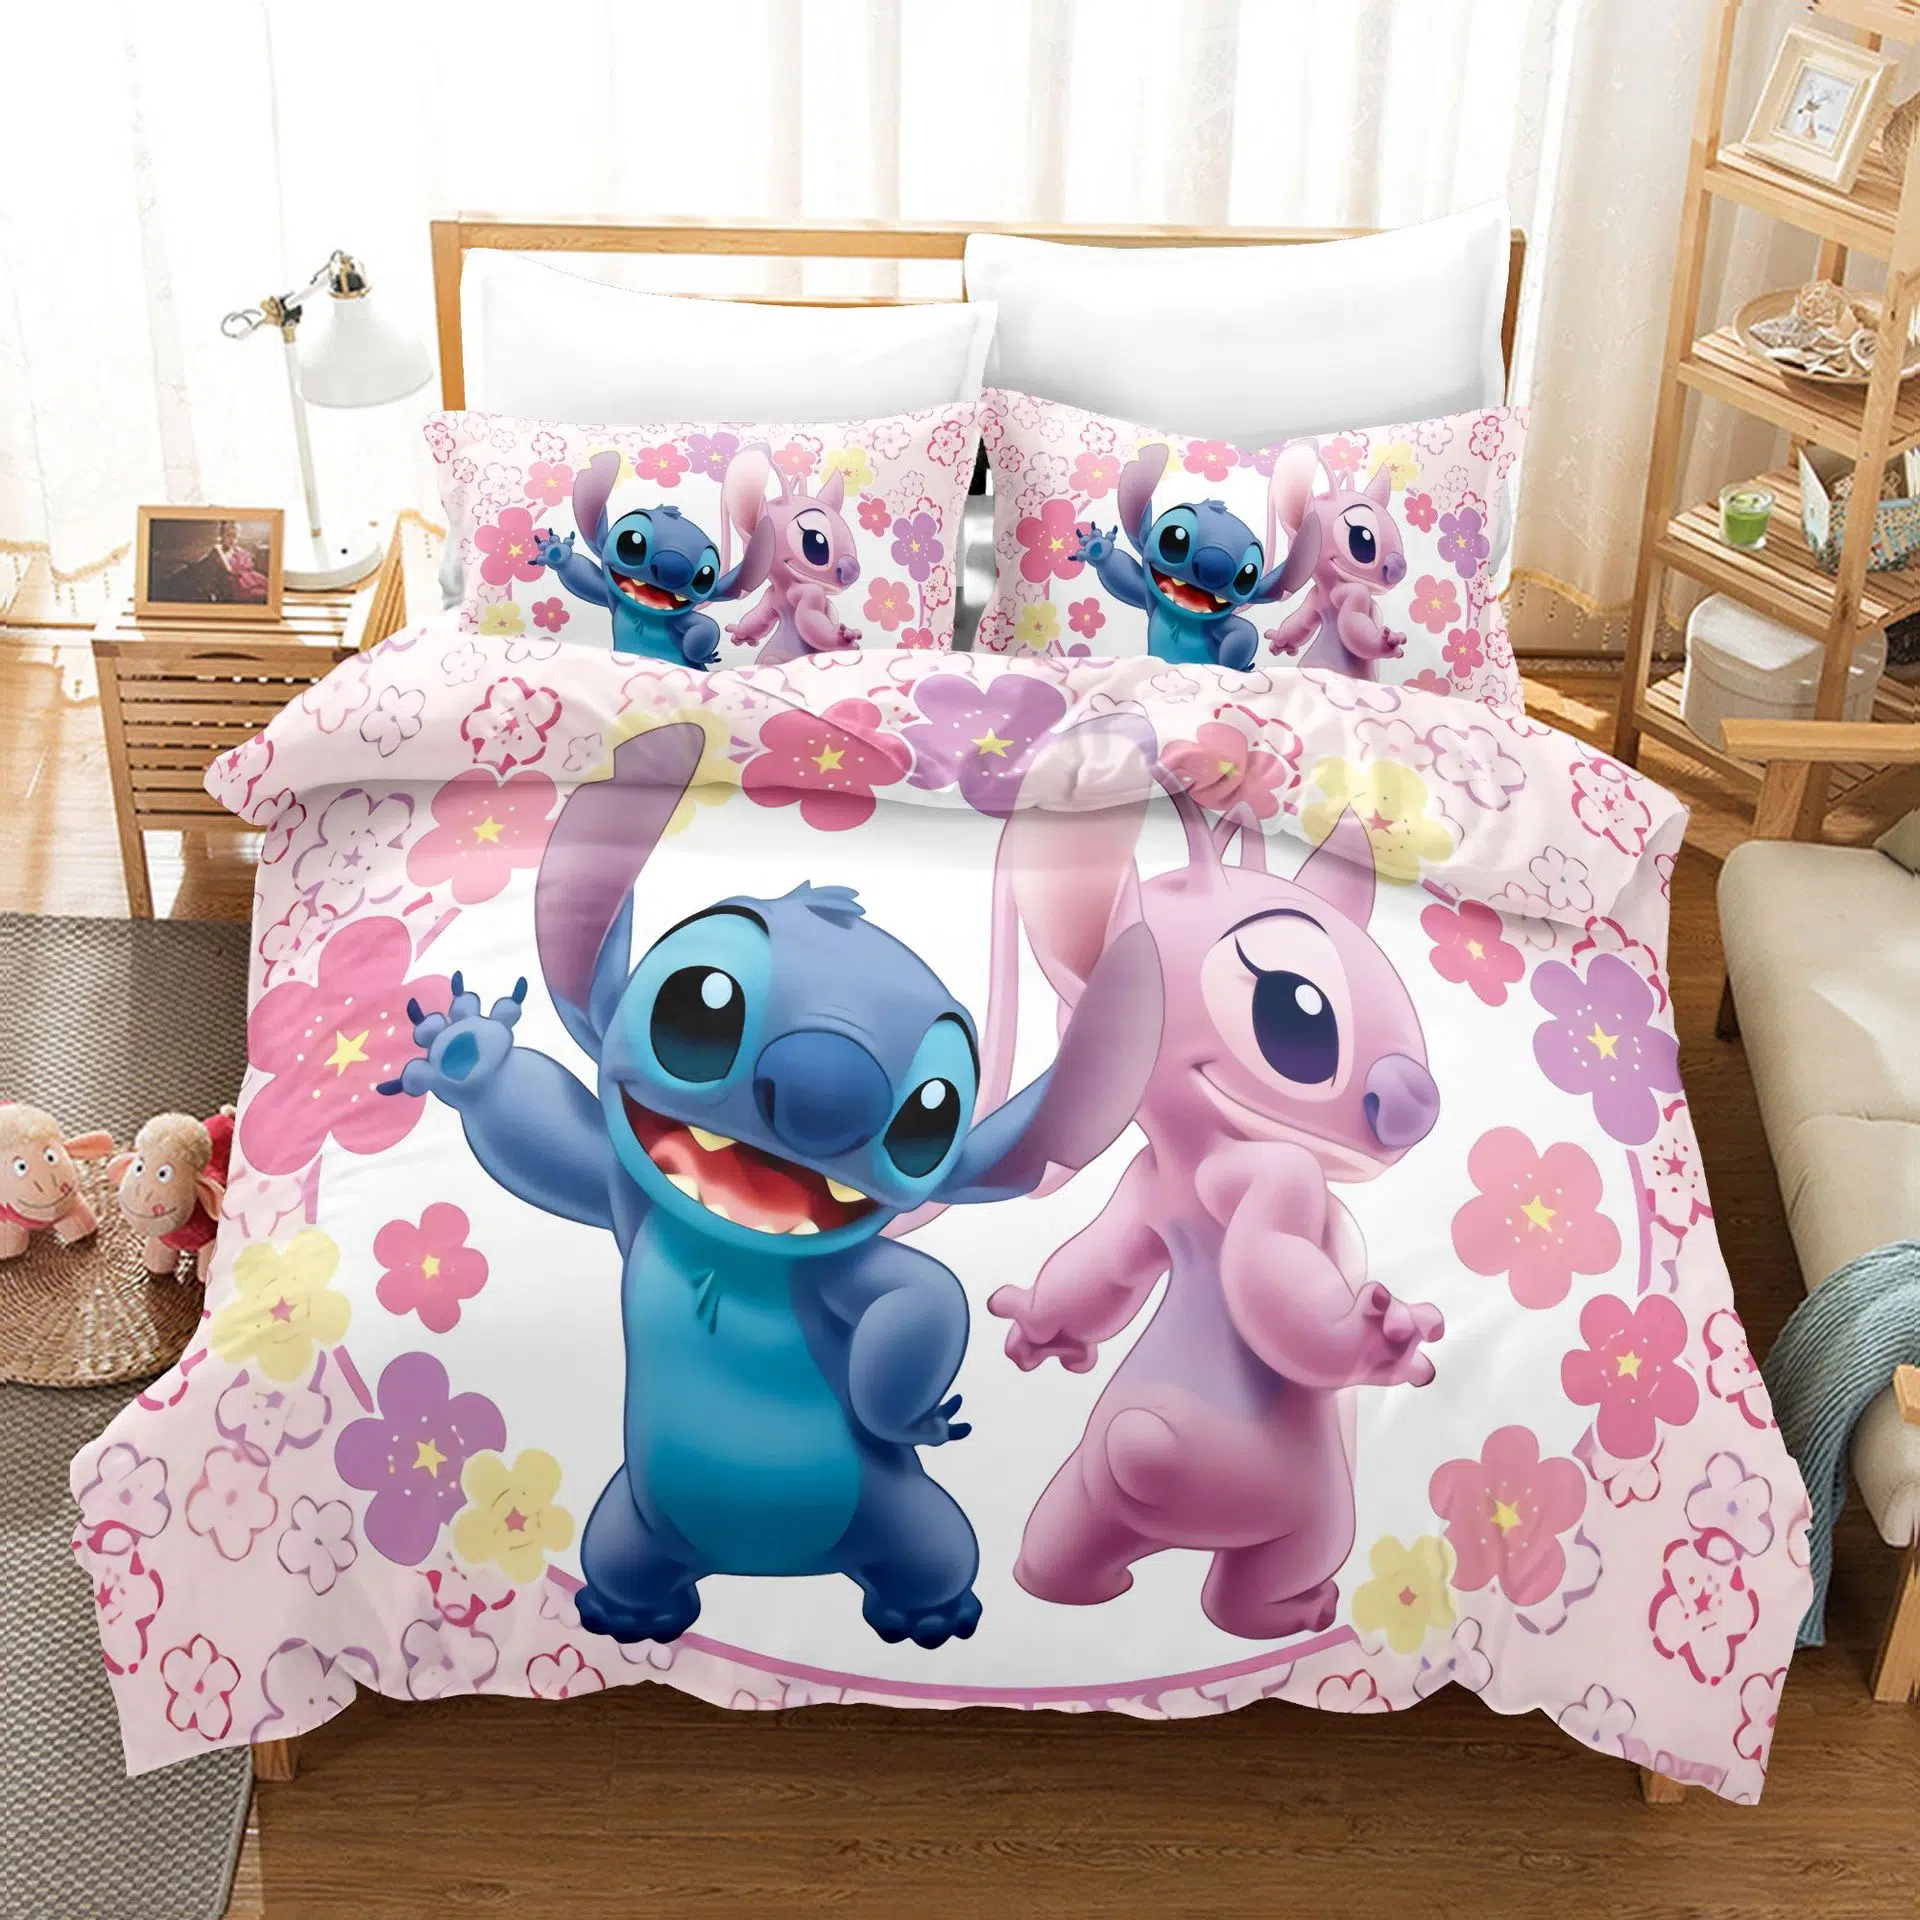 Ensemble-de-literie-Disney-Stitch-drap-taie-d-oreiller-couvre-lit-simple-ou-double-couverture-de (7)